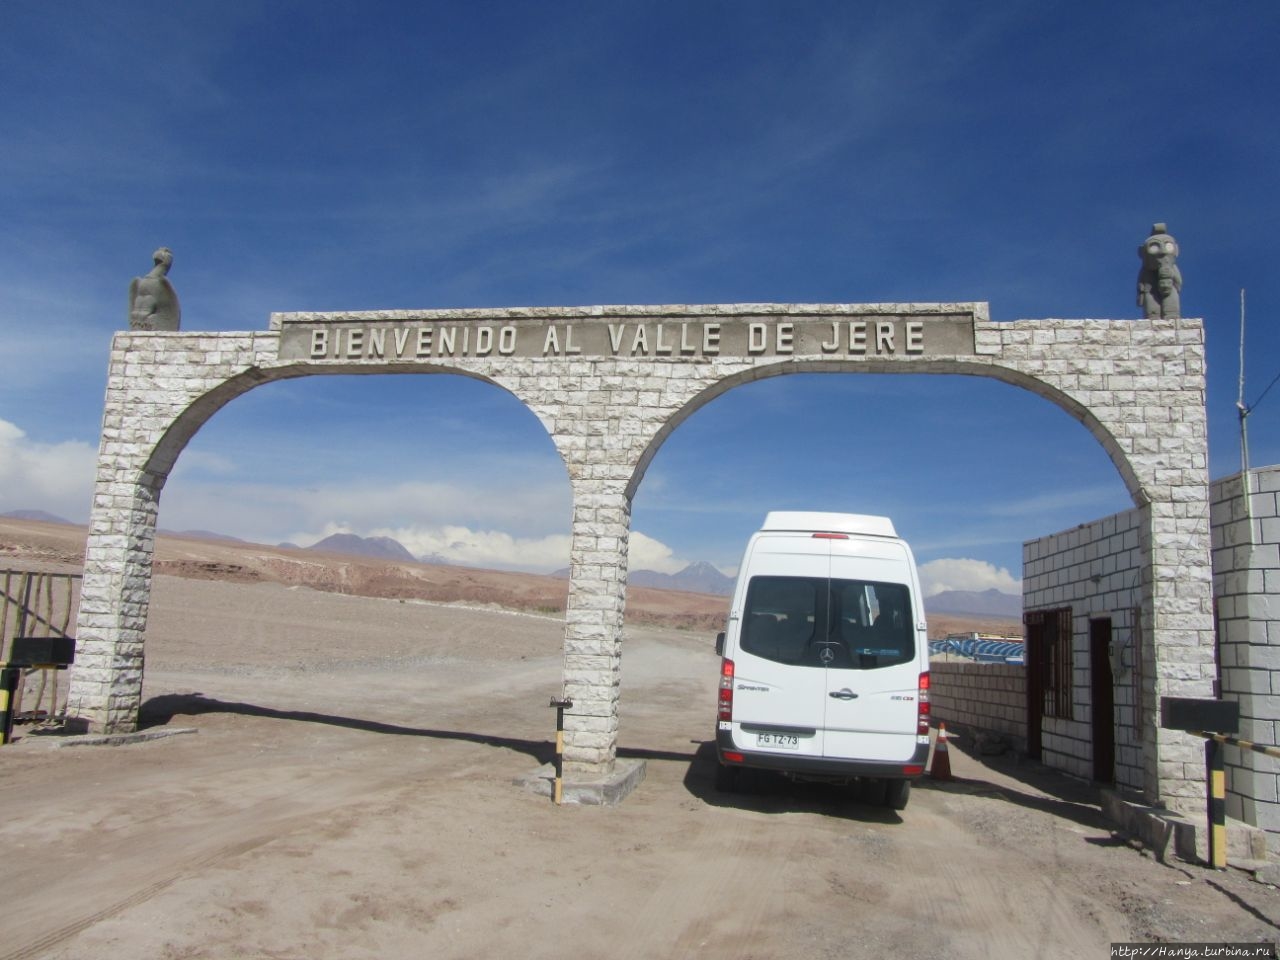 Атакама. Мистические туры / Atacama Mística Cabañas y Tours